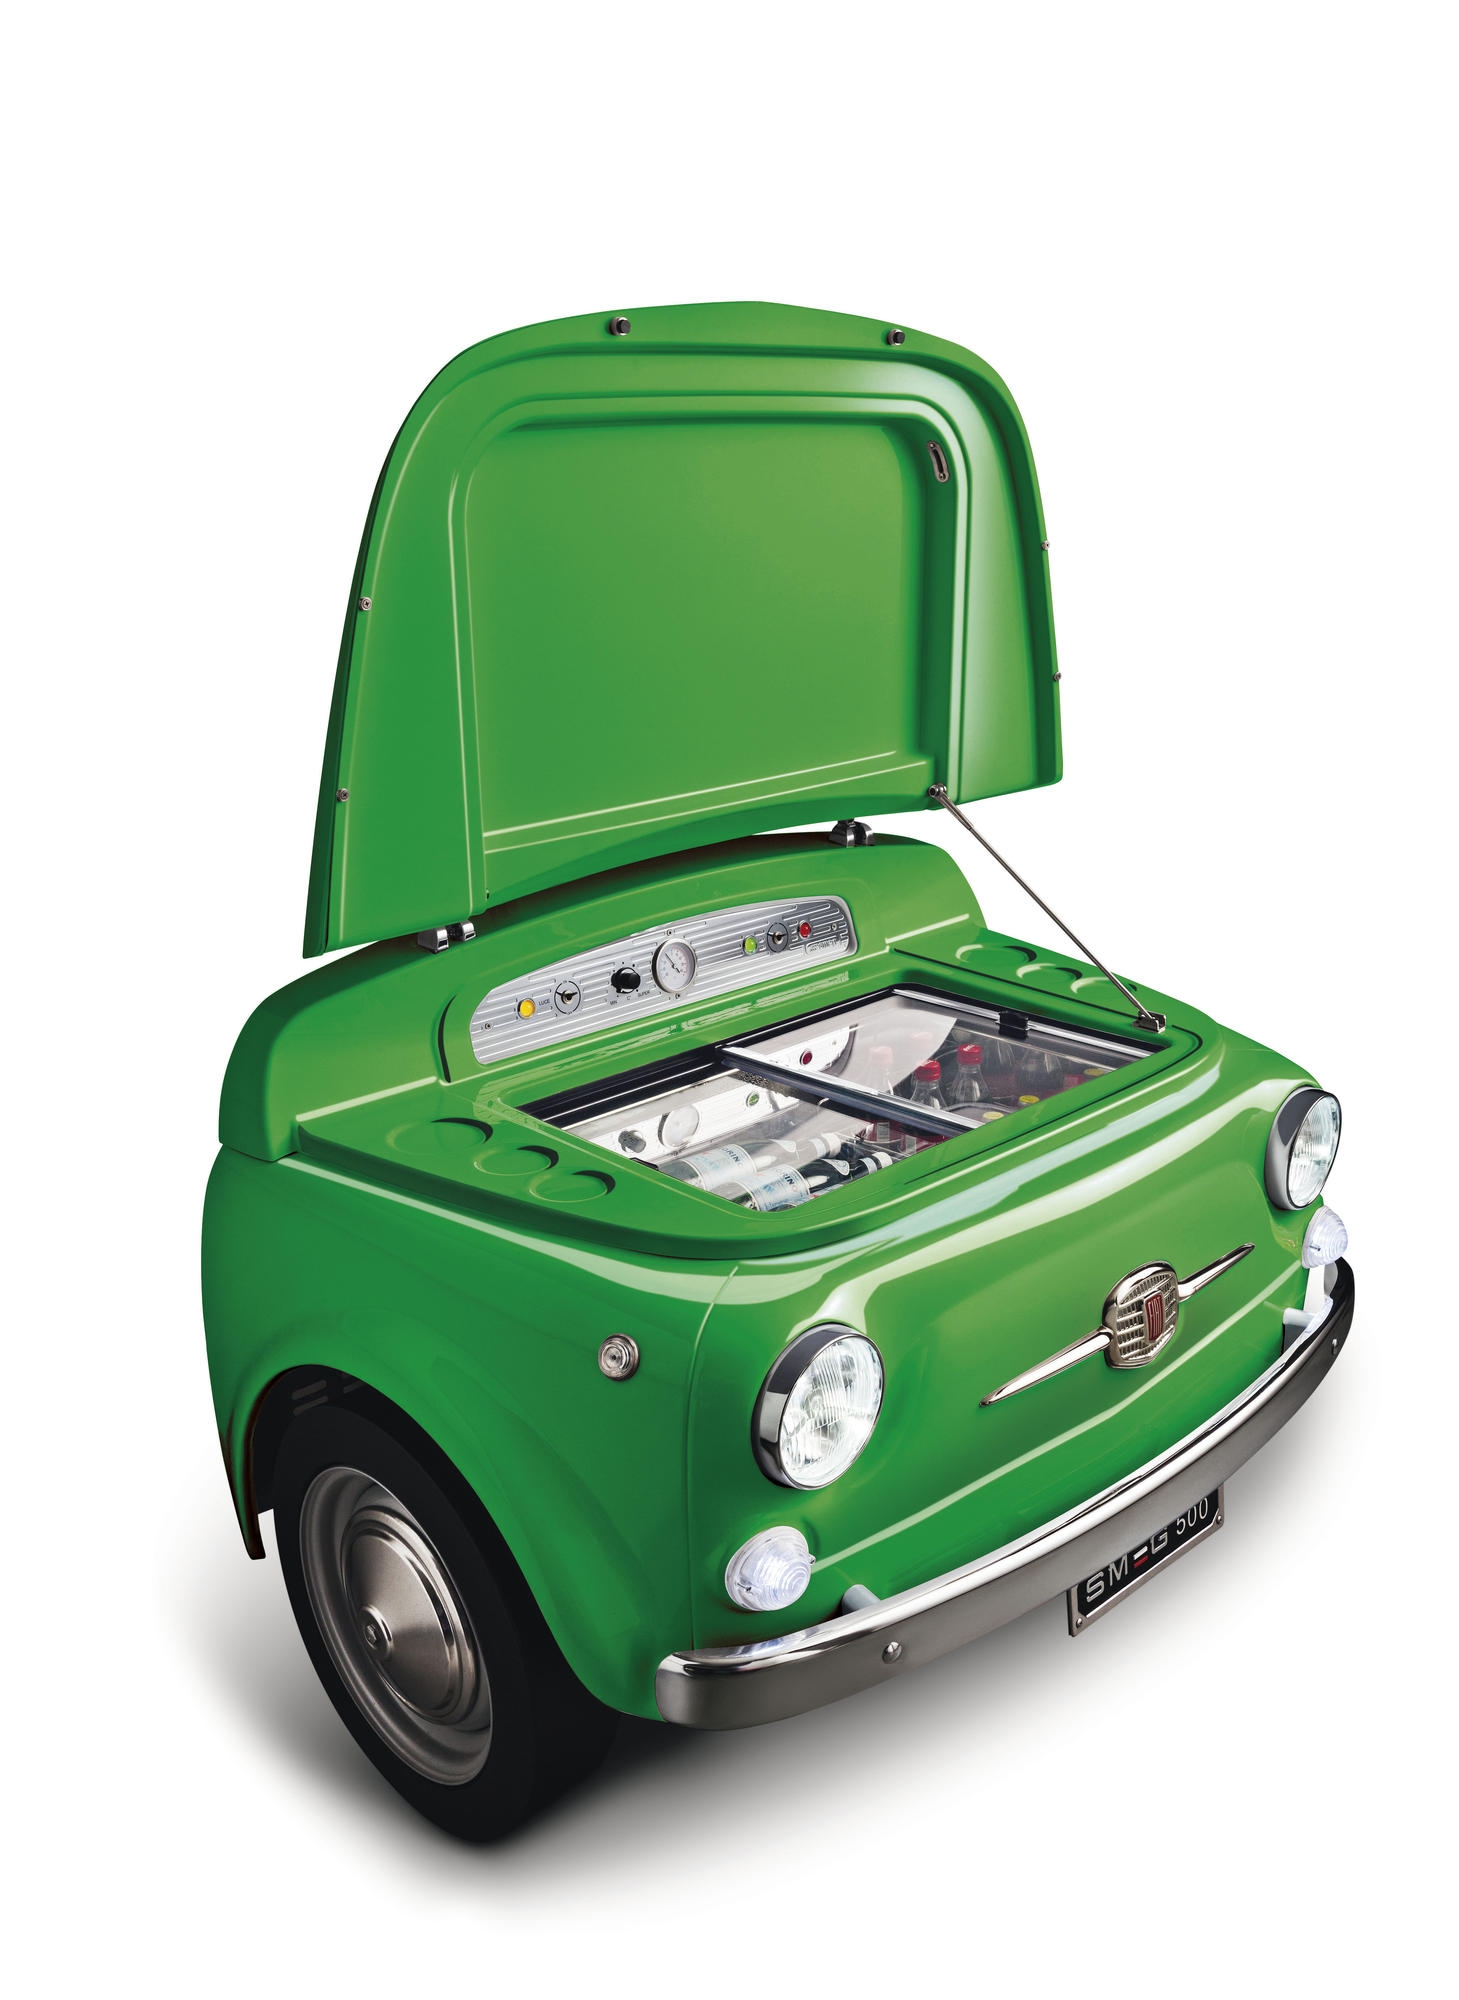 Холодильная камера, цвет зеленый Smeg SMEG500V